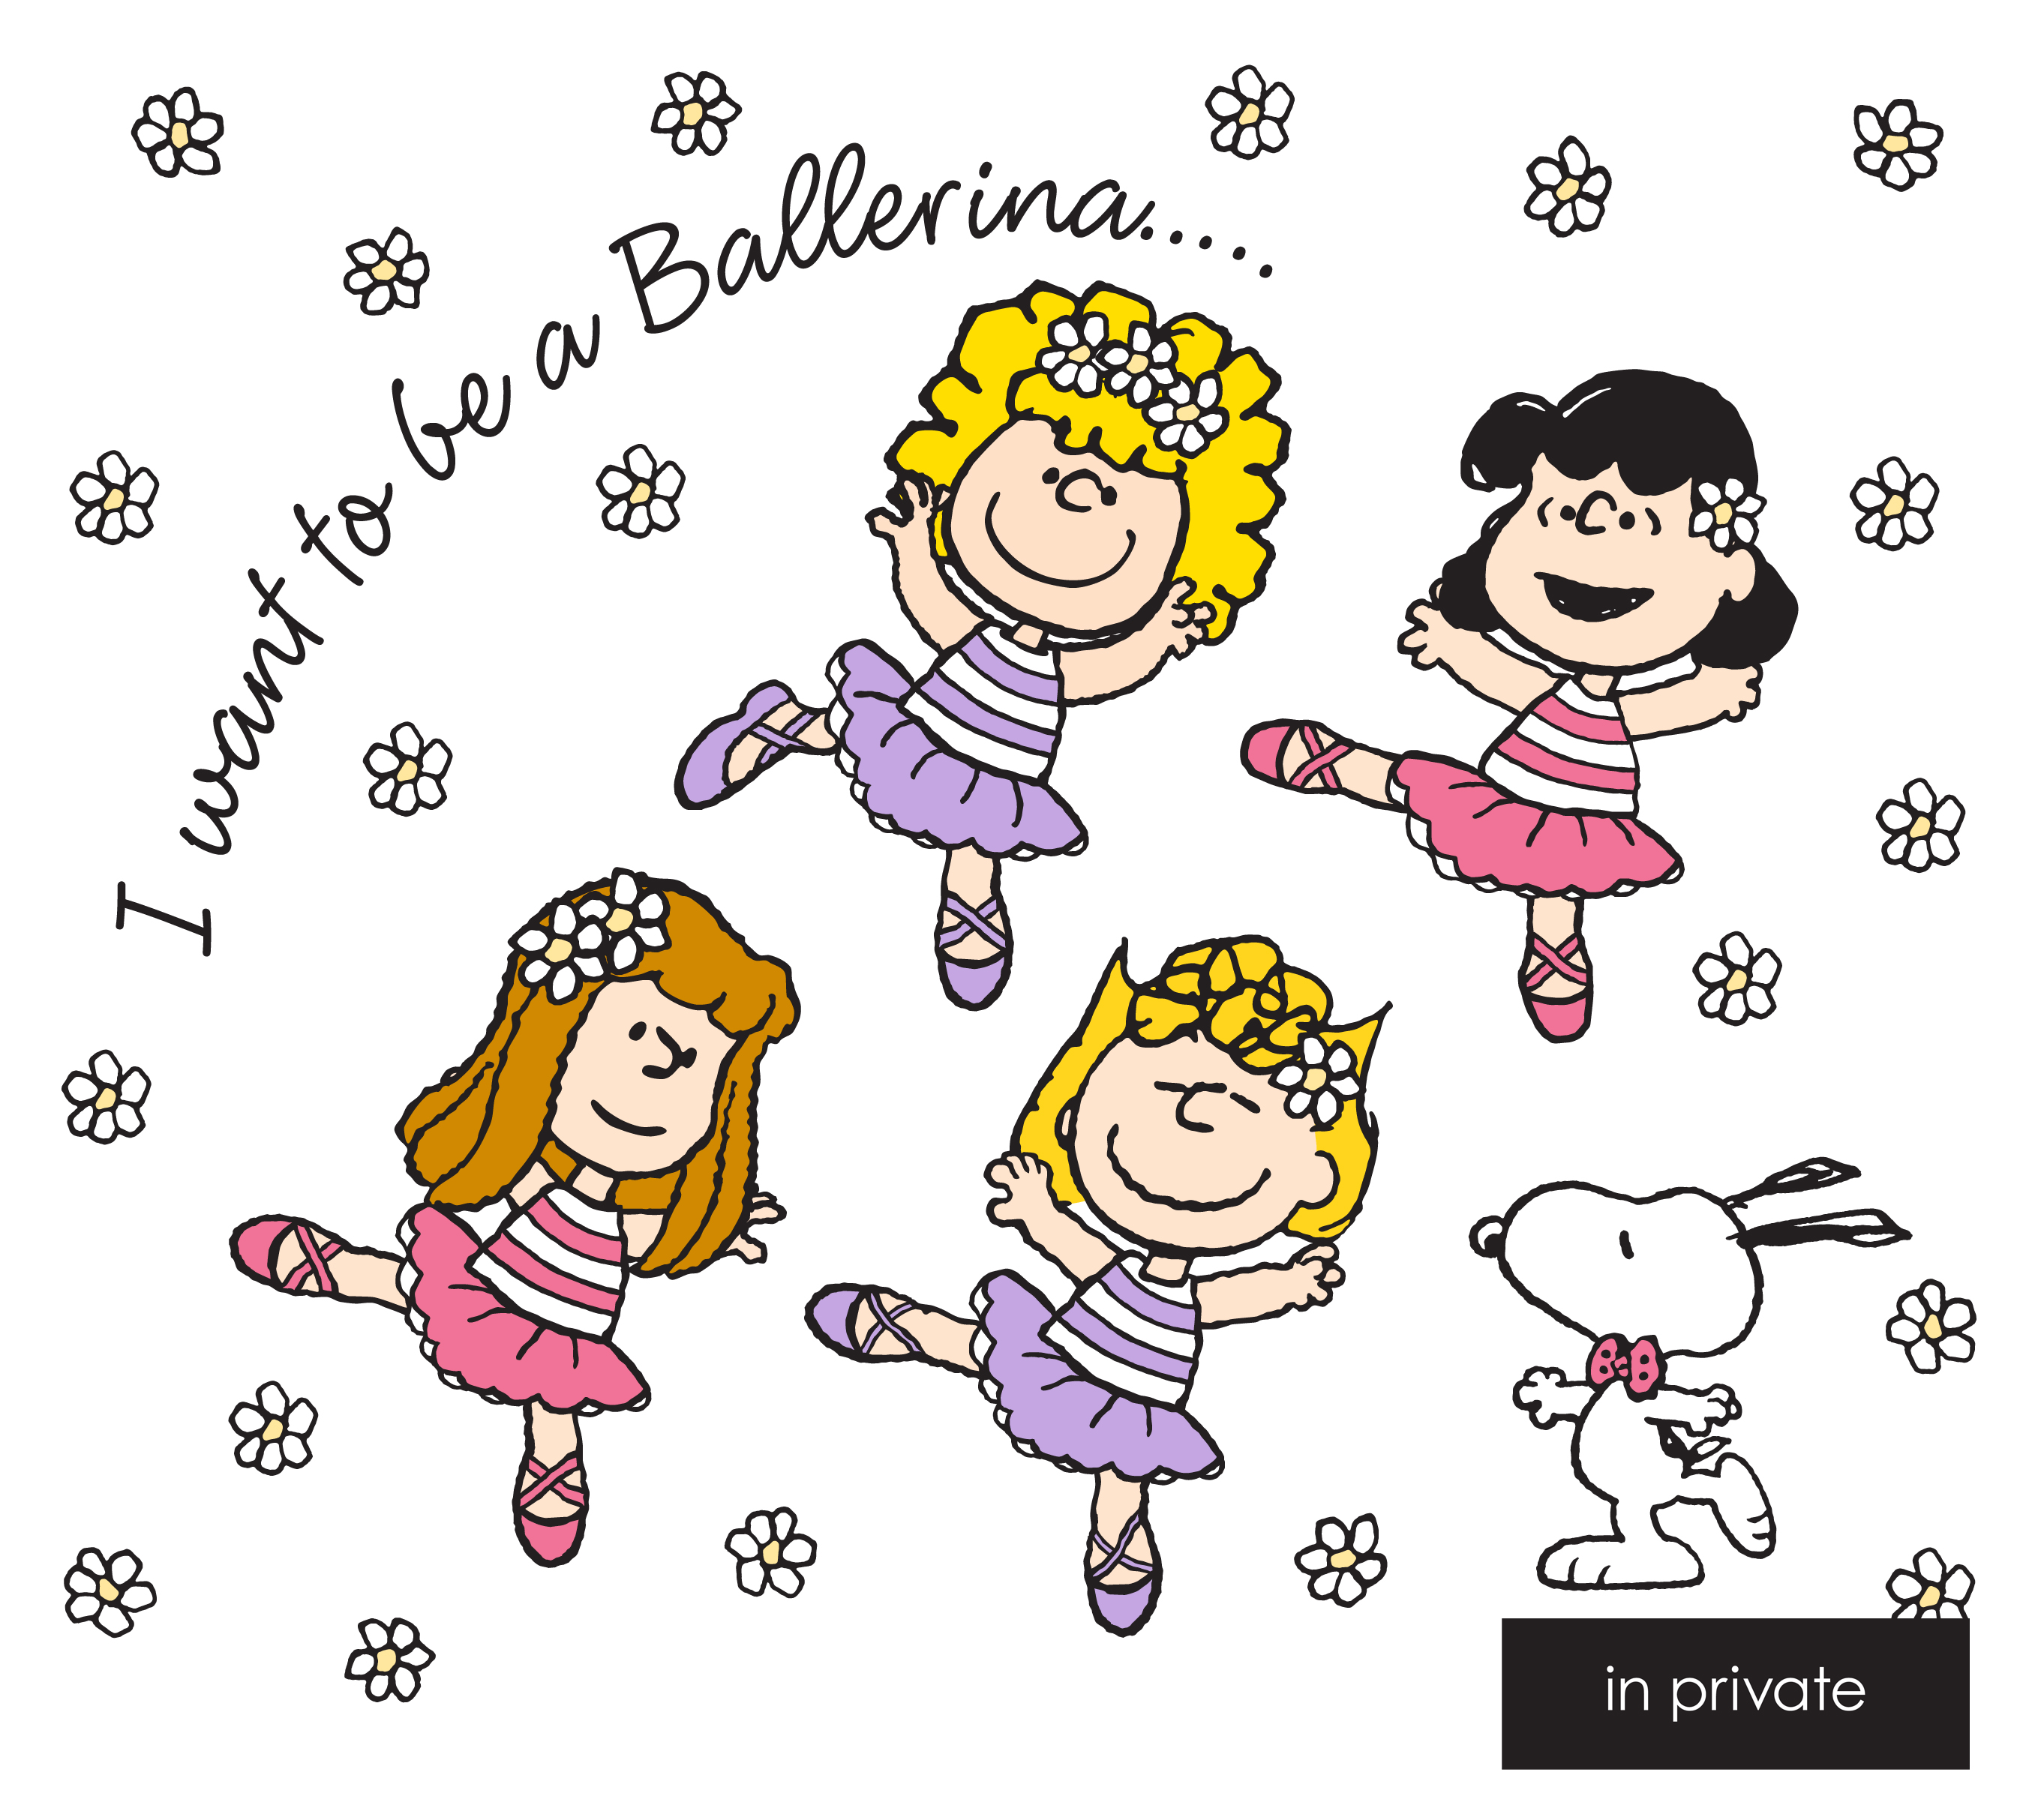 4人の女の子たちが元気いっぱいのバレリーナに In Private Peanuts のコラボレーションアイテム発売 プラザスタイルのプレスリリース